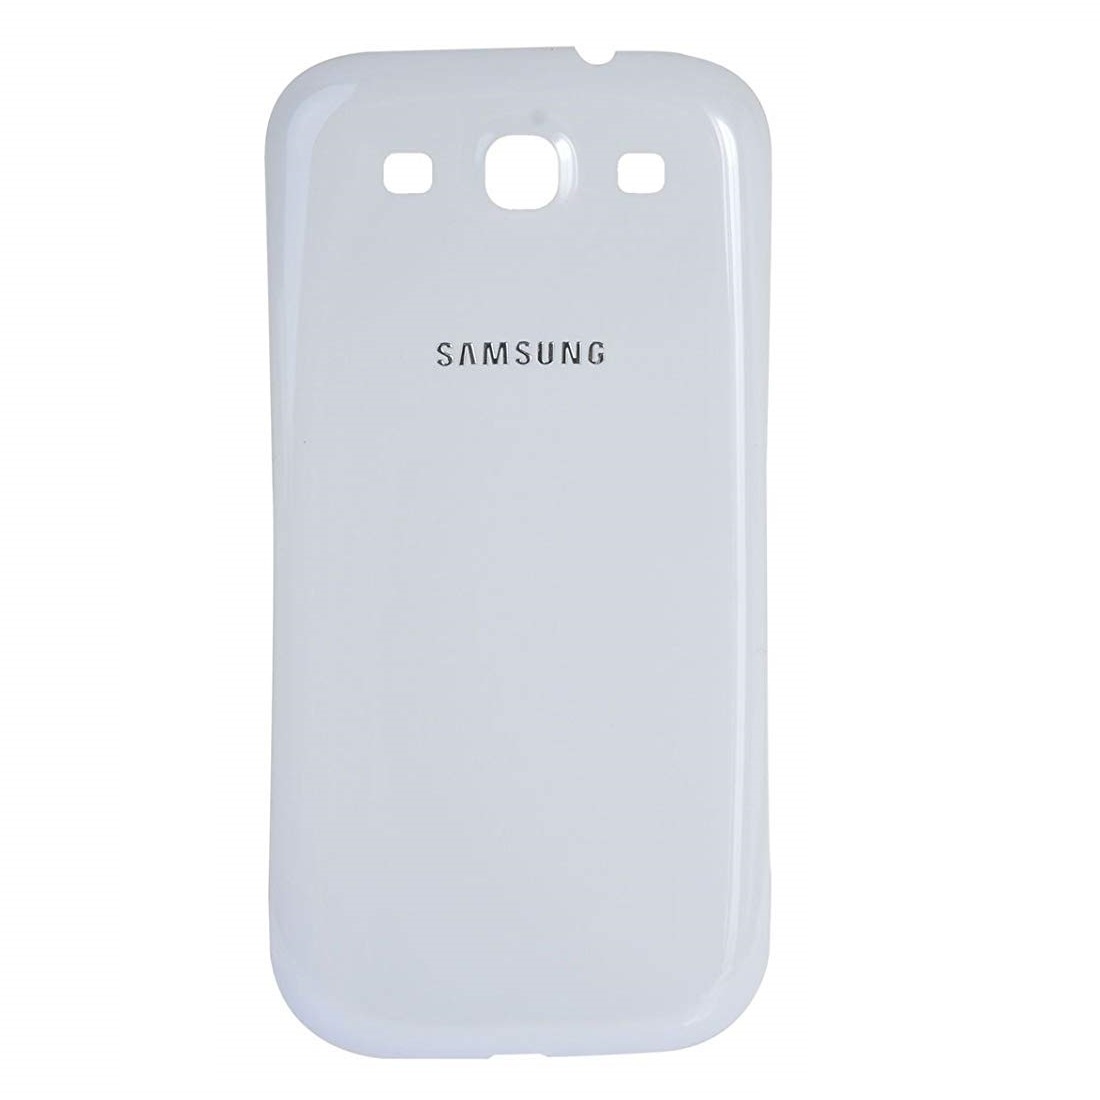 در پشت گوشی مدل I9300-W مناسب برای گوشی موبایل سامسونگ Galaxy S3